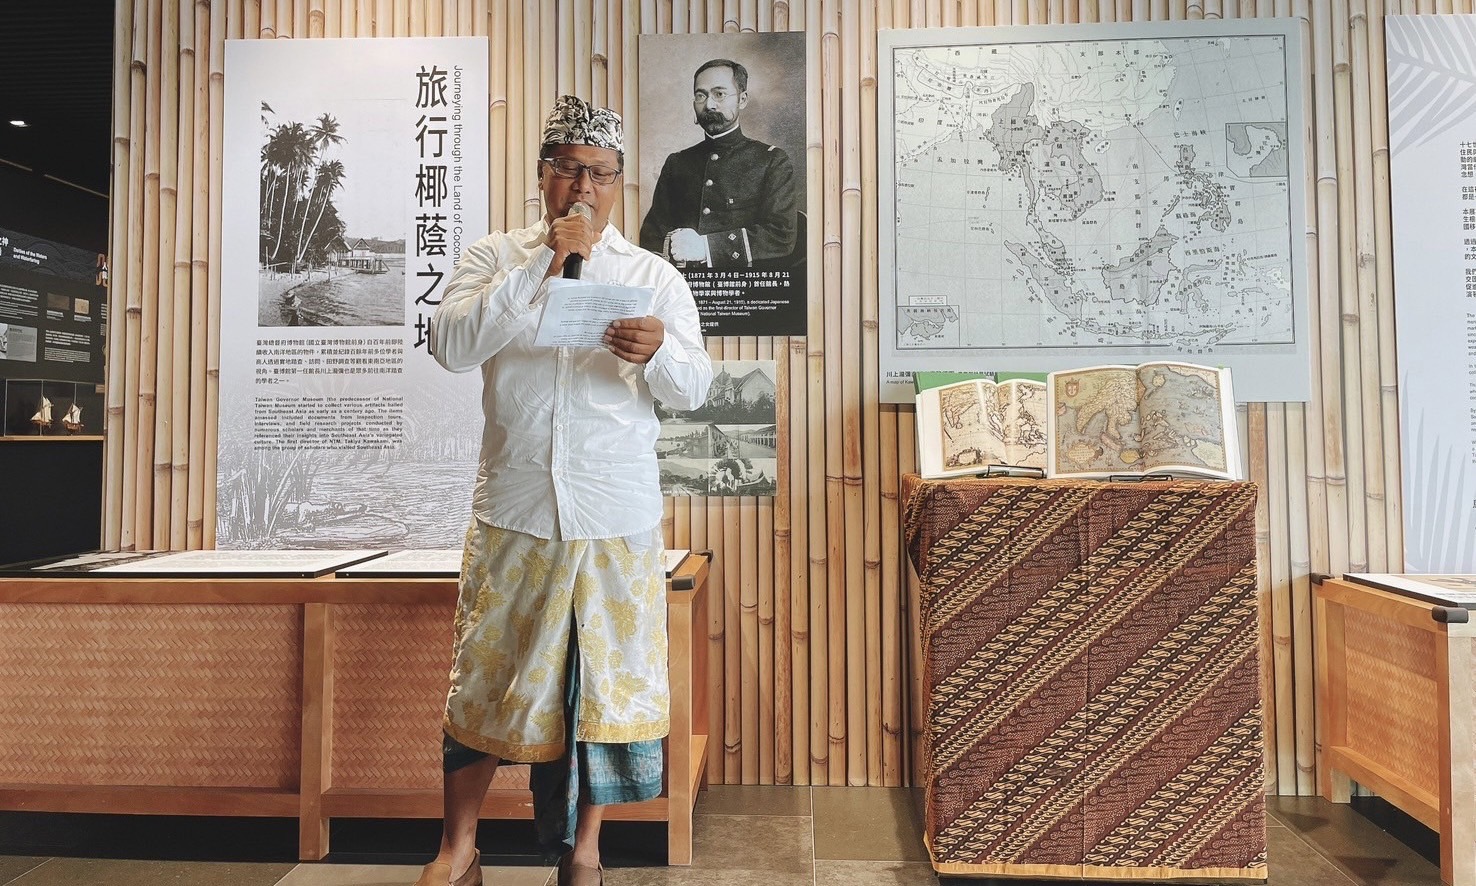  探索東南亞信仰文化 「百年對話-跨國移動者與臺博館藏的相遇」 